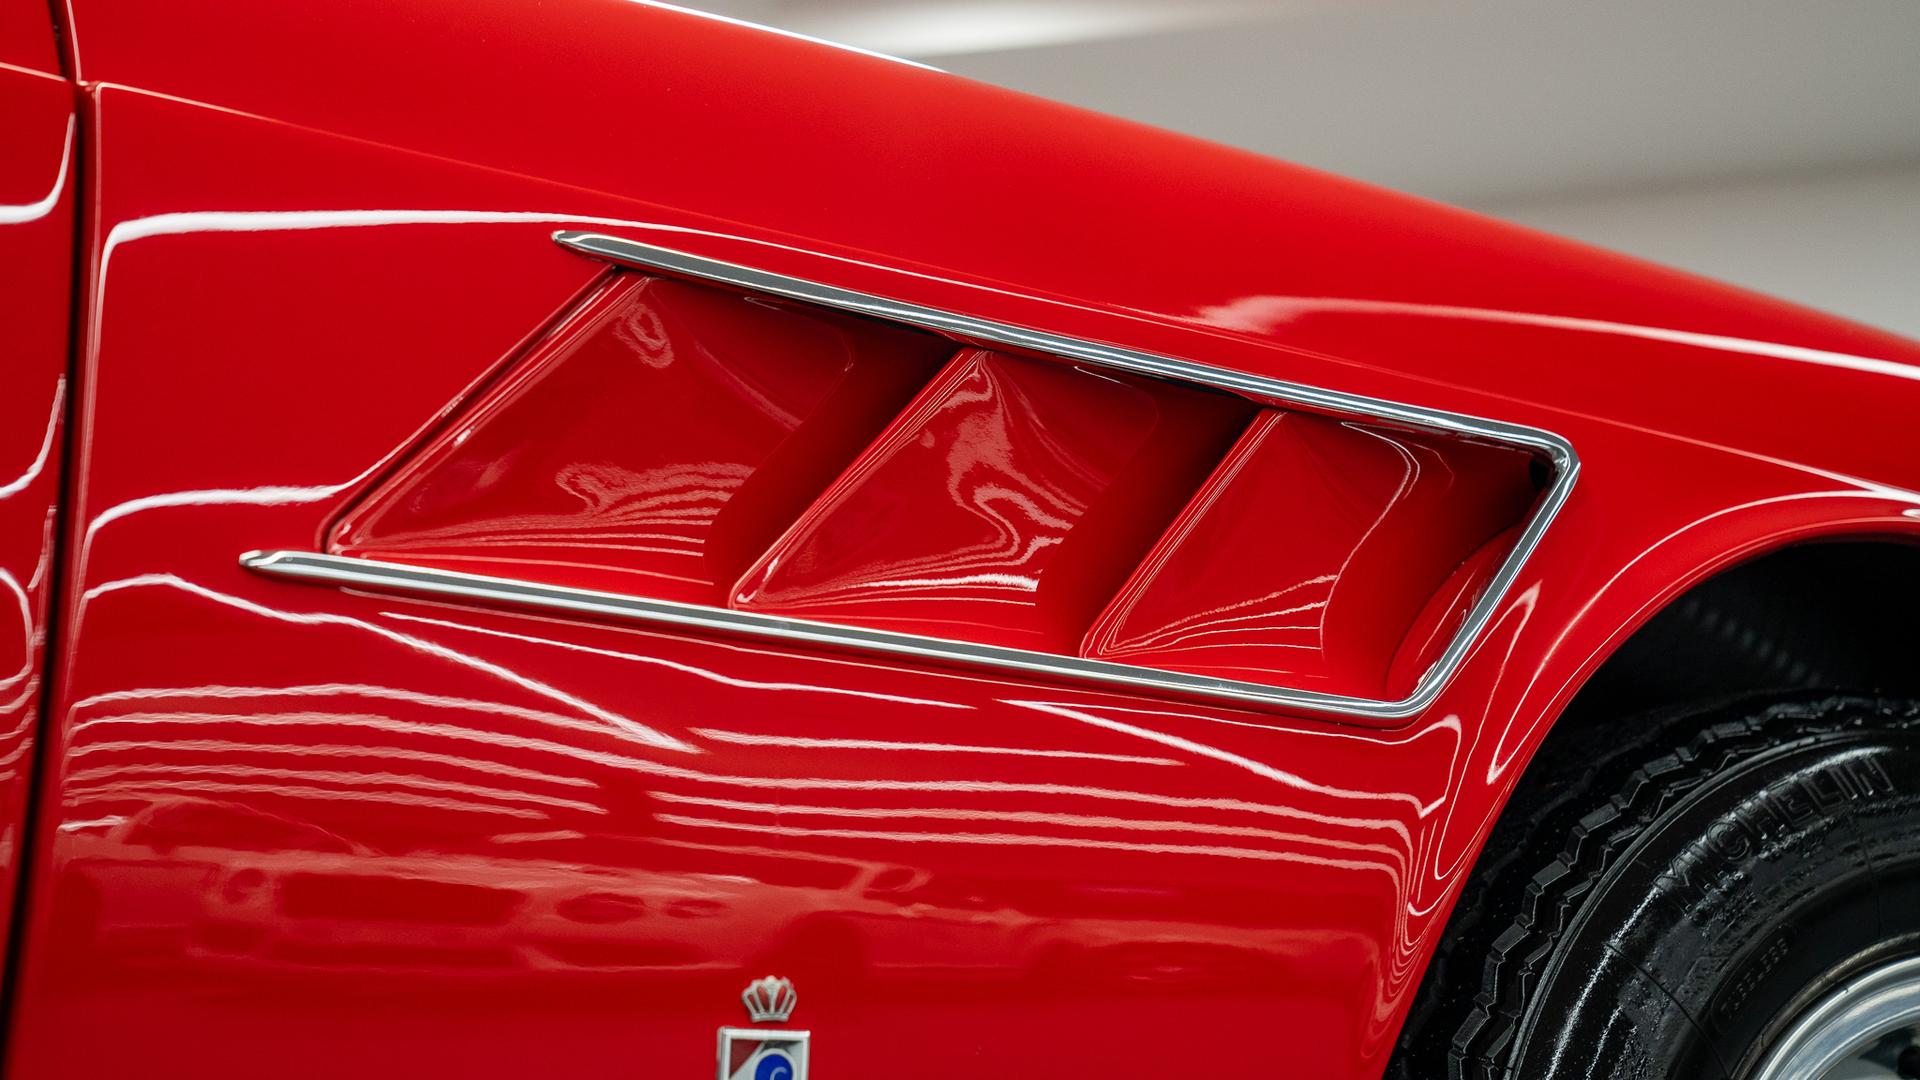 Ferrari 275 GTS Photo 49588794-f609-457d-9683-3d8720044983.jpg